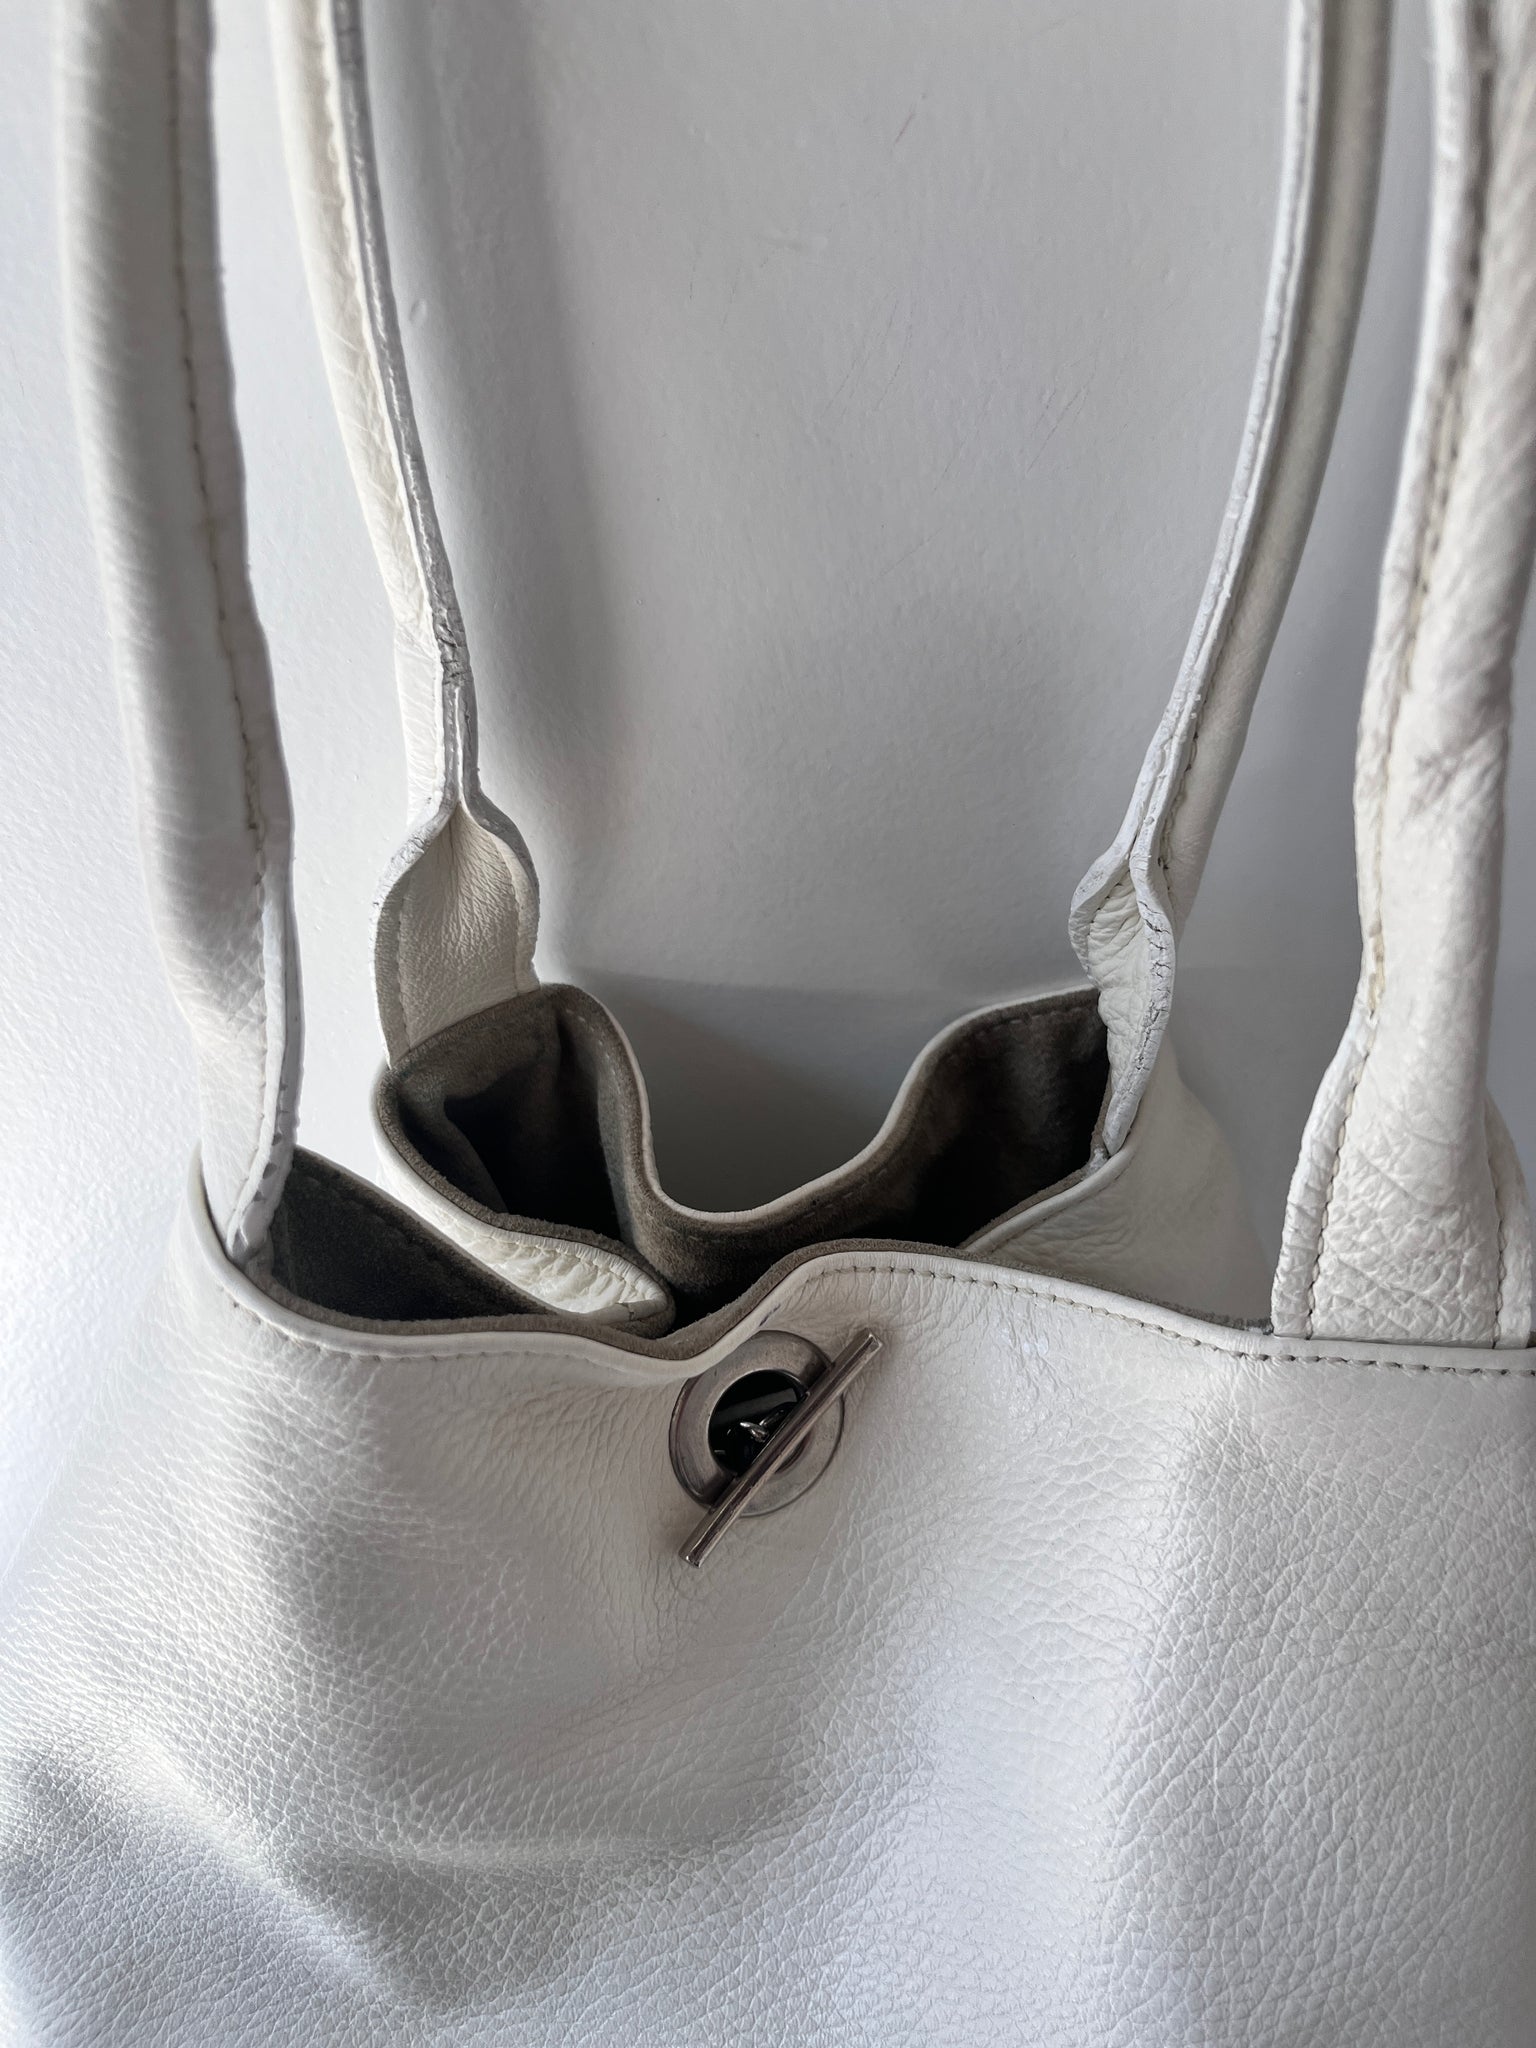 White leather toggle bag